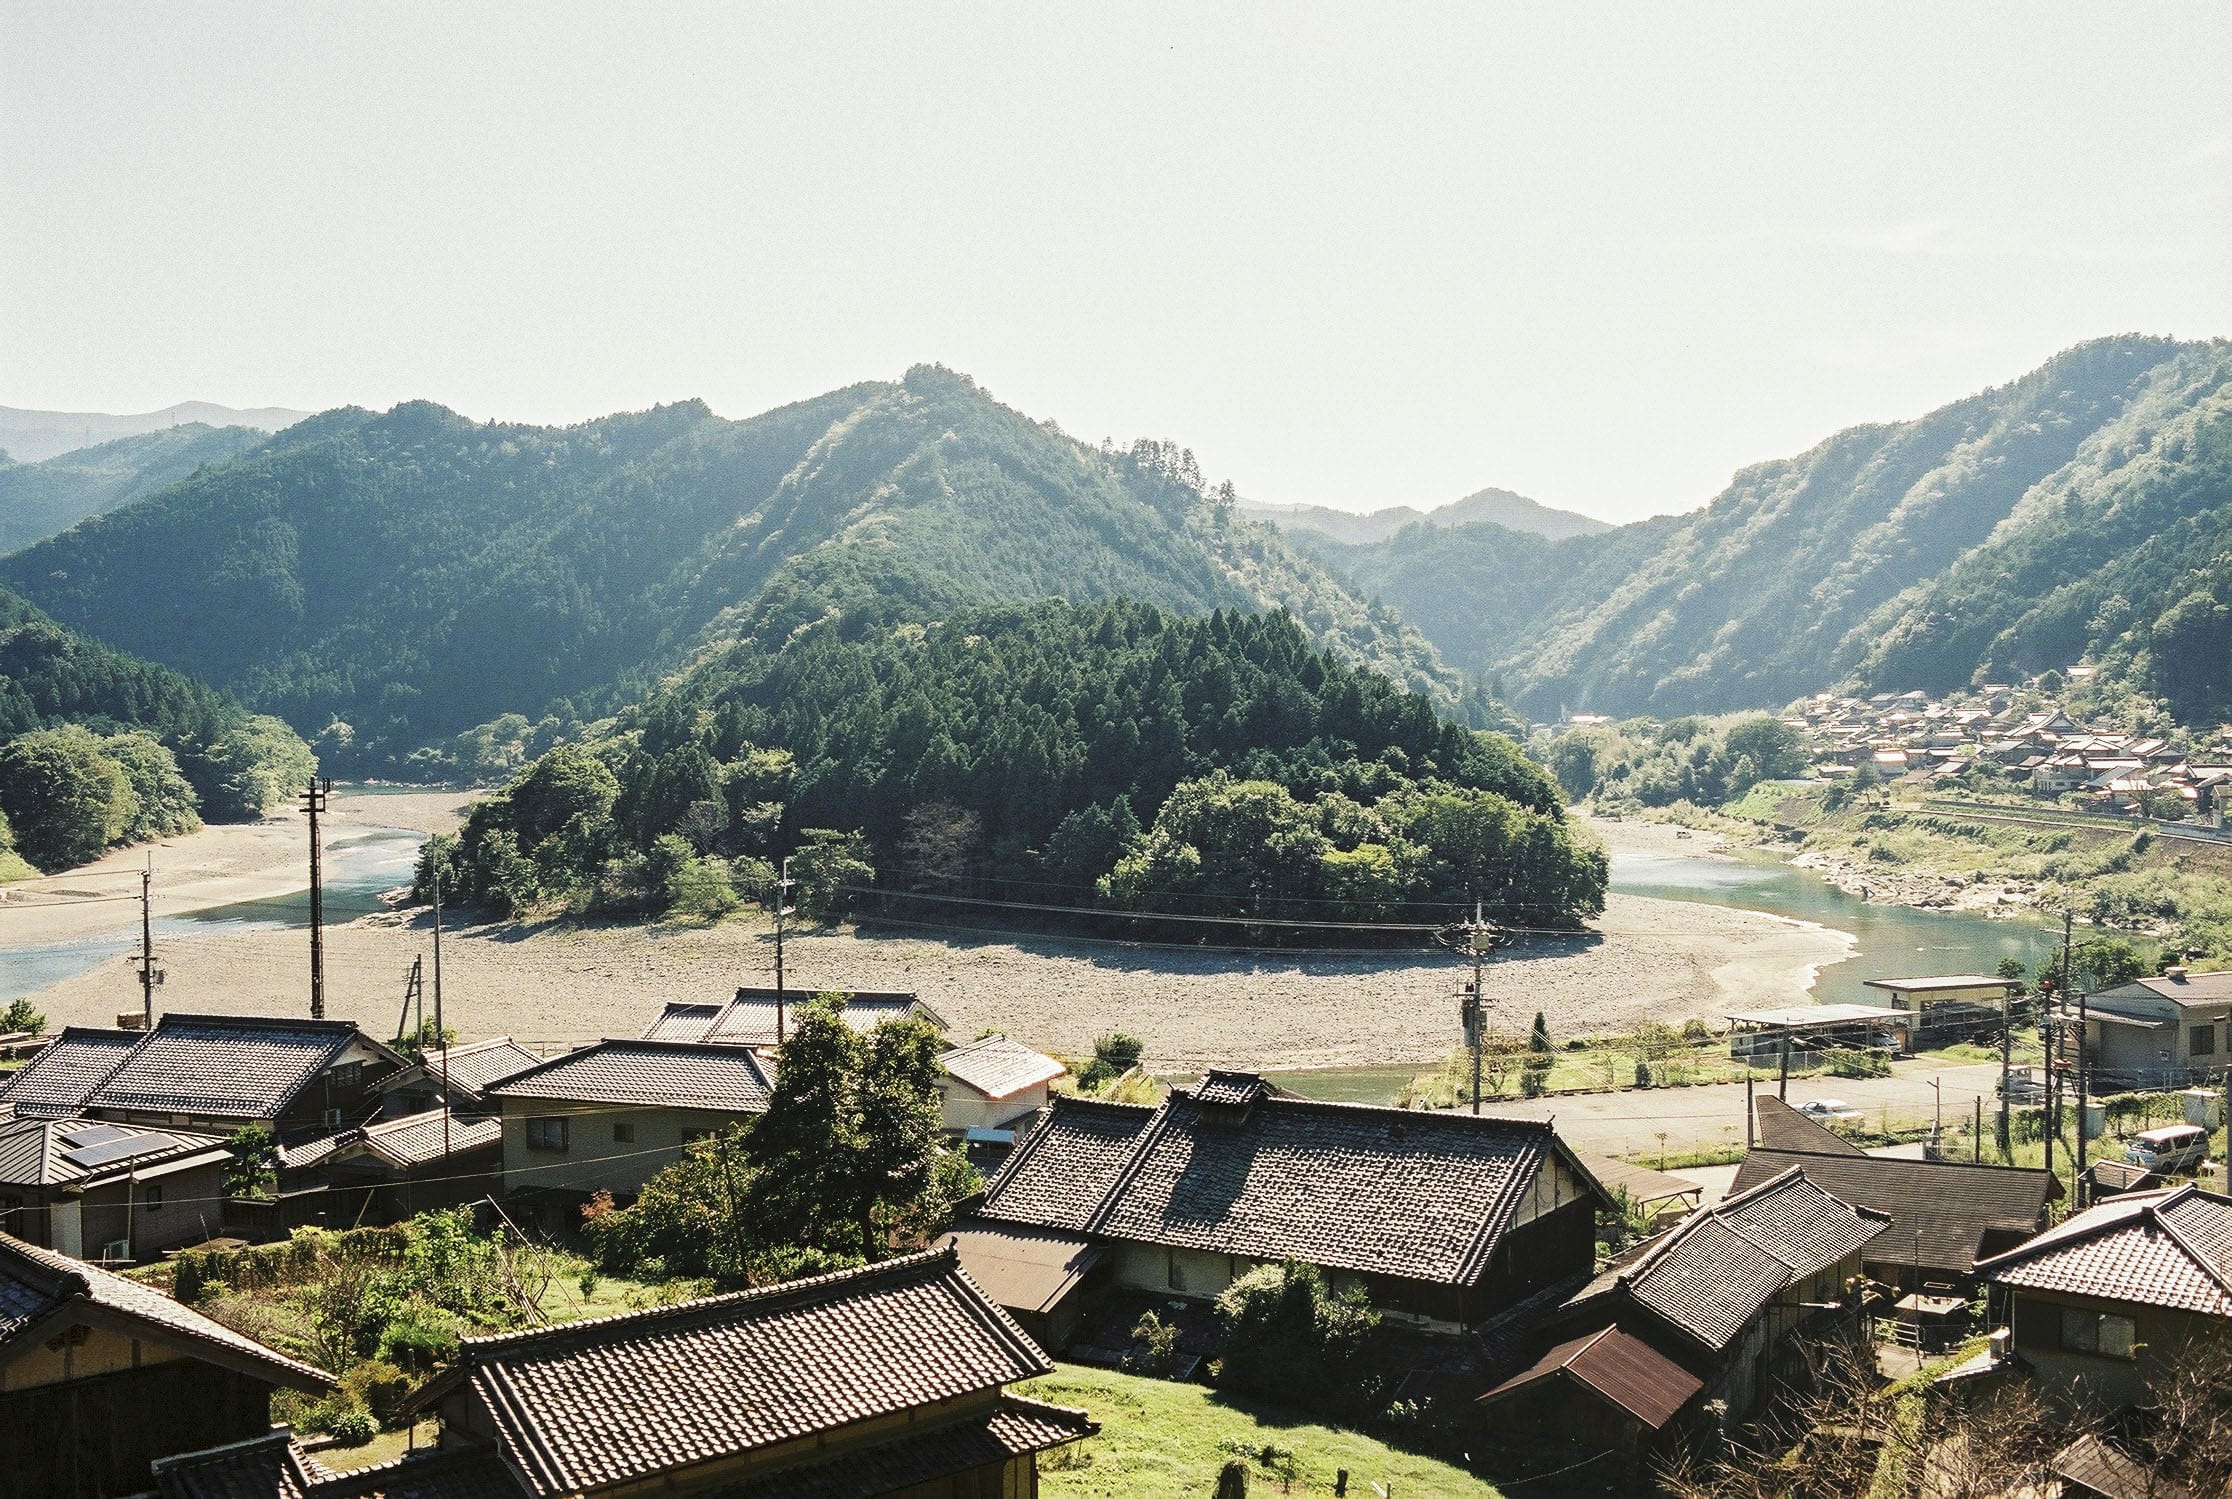 隣の吉野町の集落を見渡せるお気に入りの場所。川を囲むようにして家が建ち、どこからでも、美しい川の流れが目に入る。